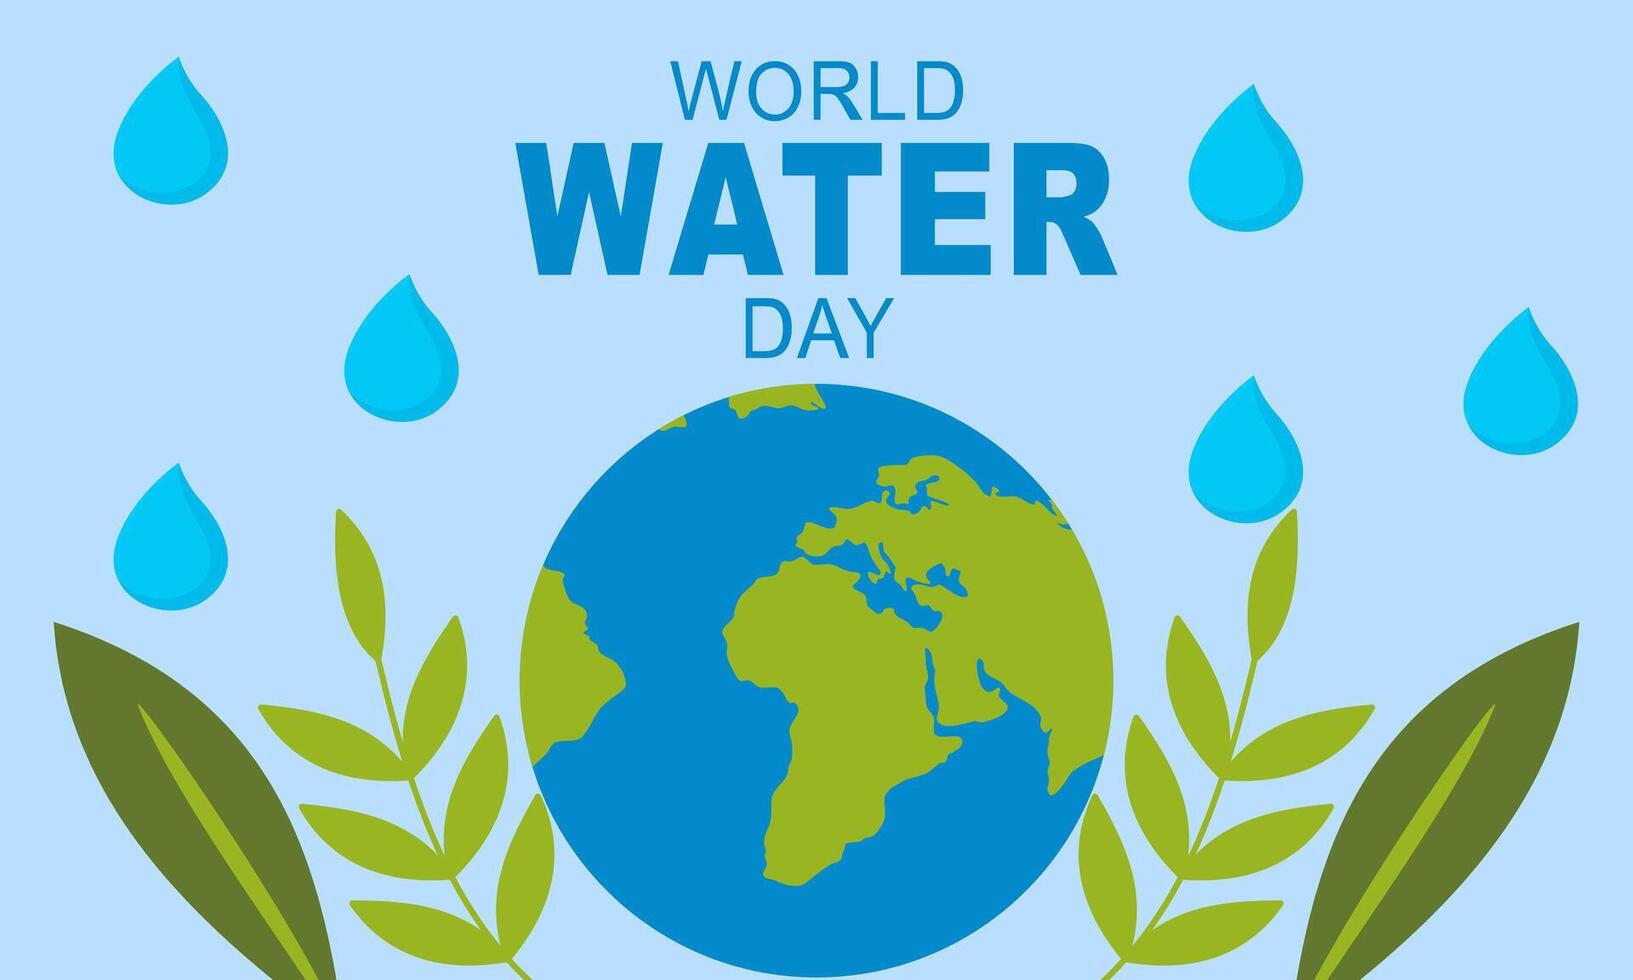 monde l'eau journée à 22 Mars affiche campagnes vecteur